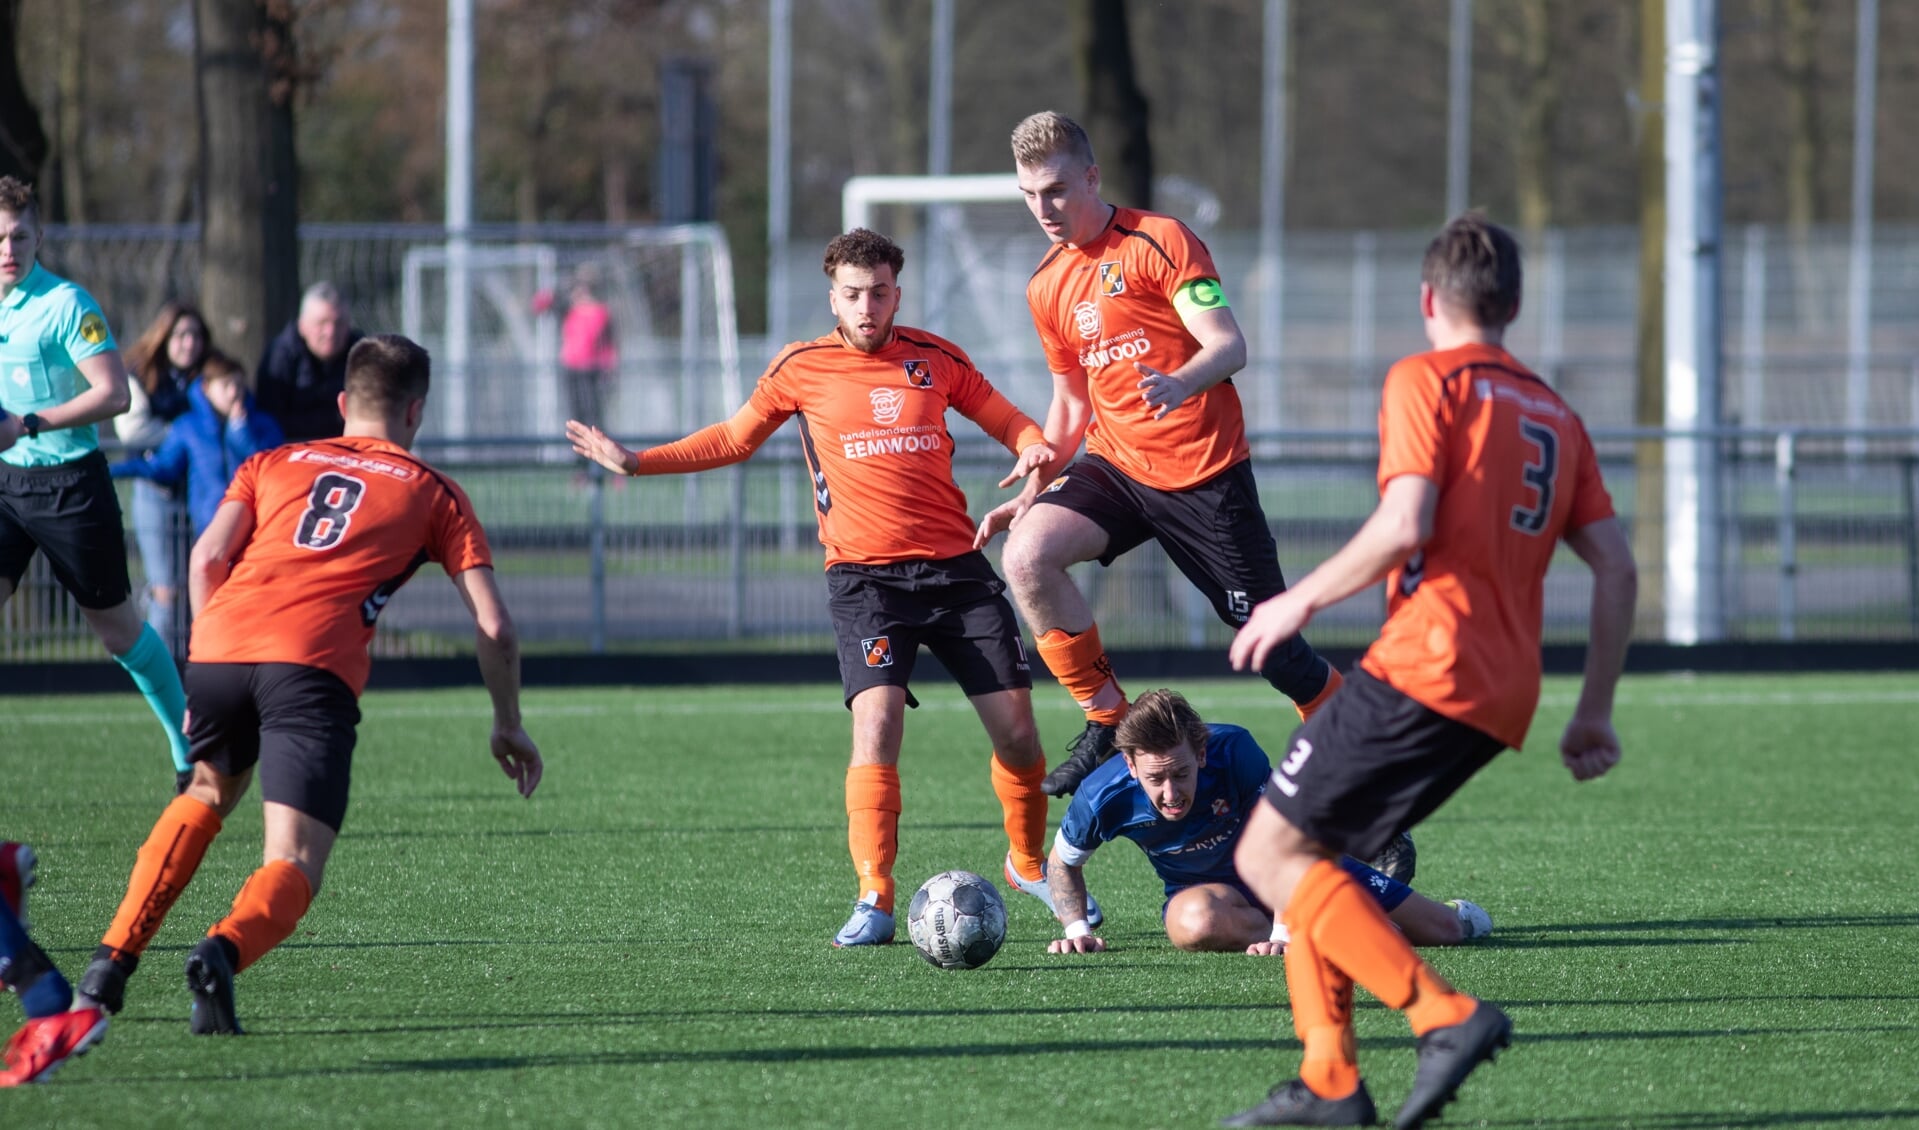 Aanvoerder Bram Dorrestijn van TOV nam zijn medespelers zaterdag op sleeptouw in de met 1-0 gewonnen wedstrijd tegen Het Hilversumse Altius.